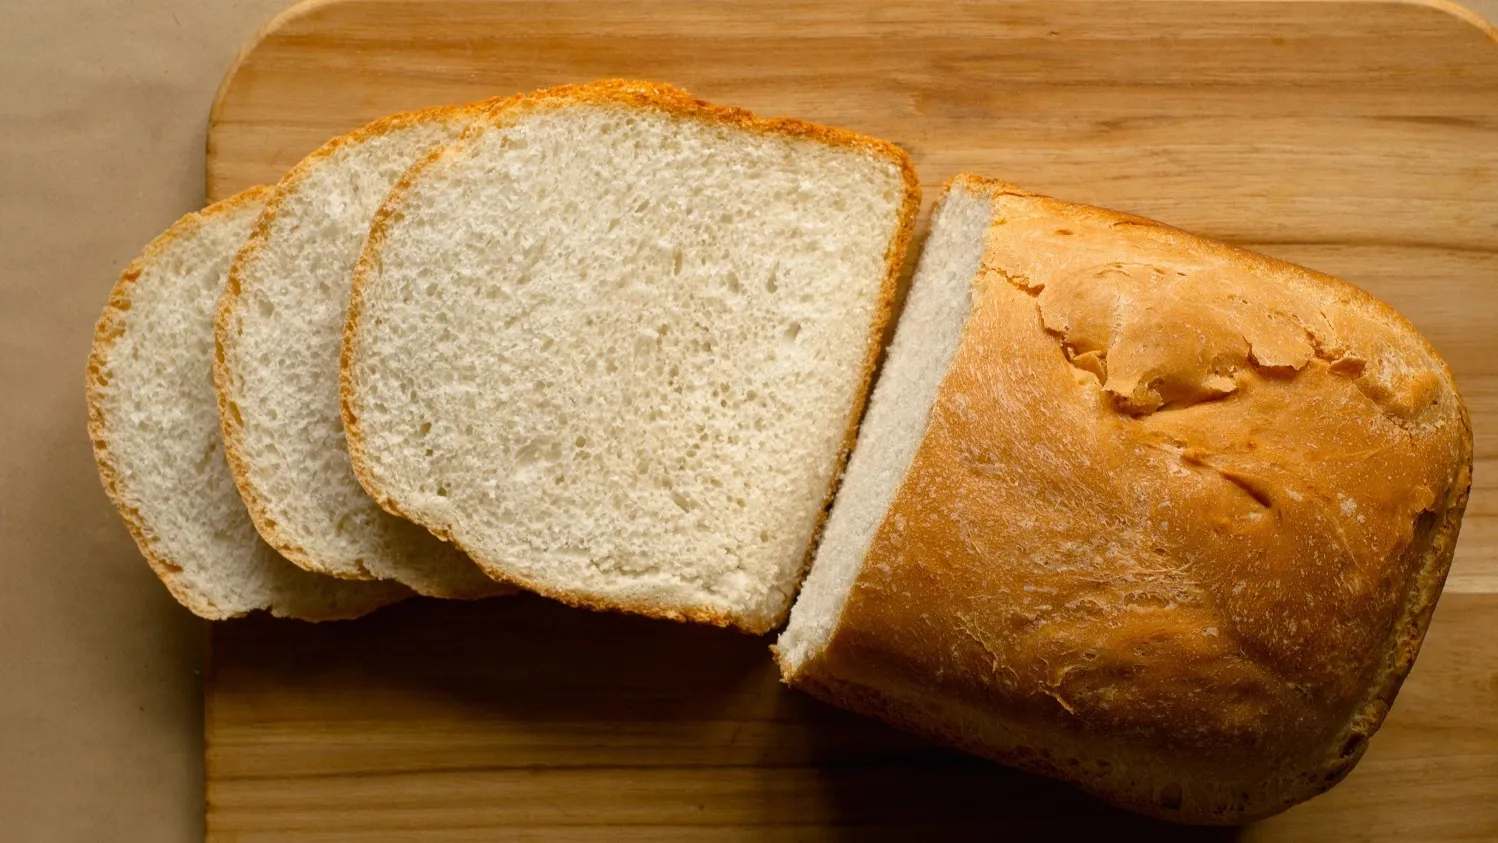 За смену в пекарне выпекают около 100 буханок хлеба. Фото: kevin brine / shutterstock.com / Fotodom